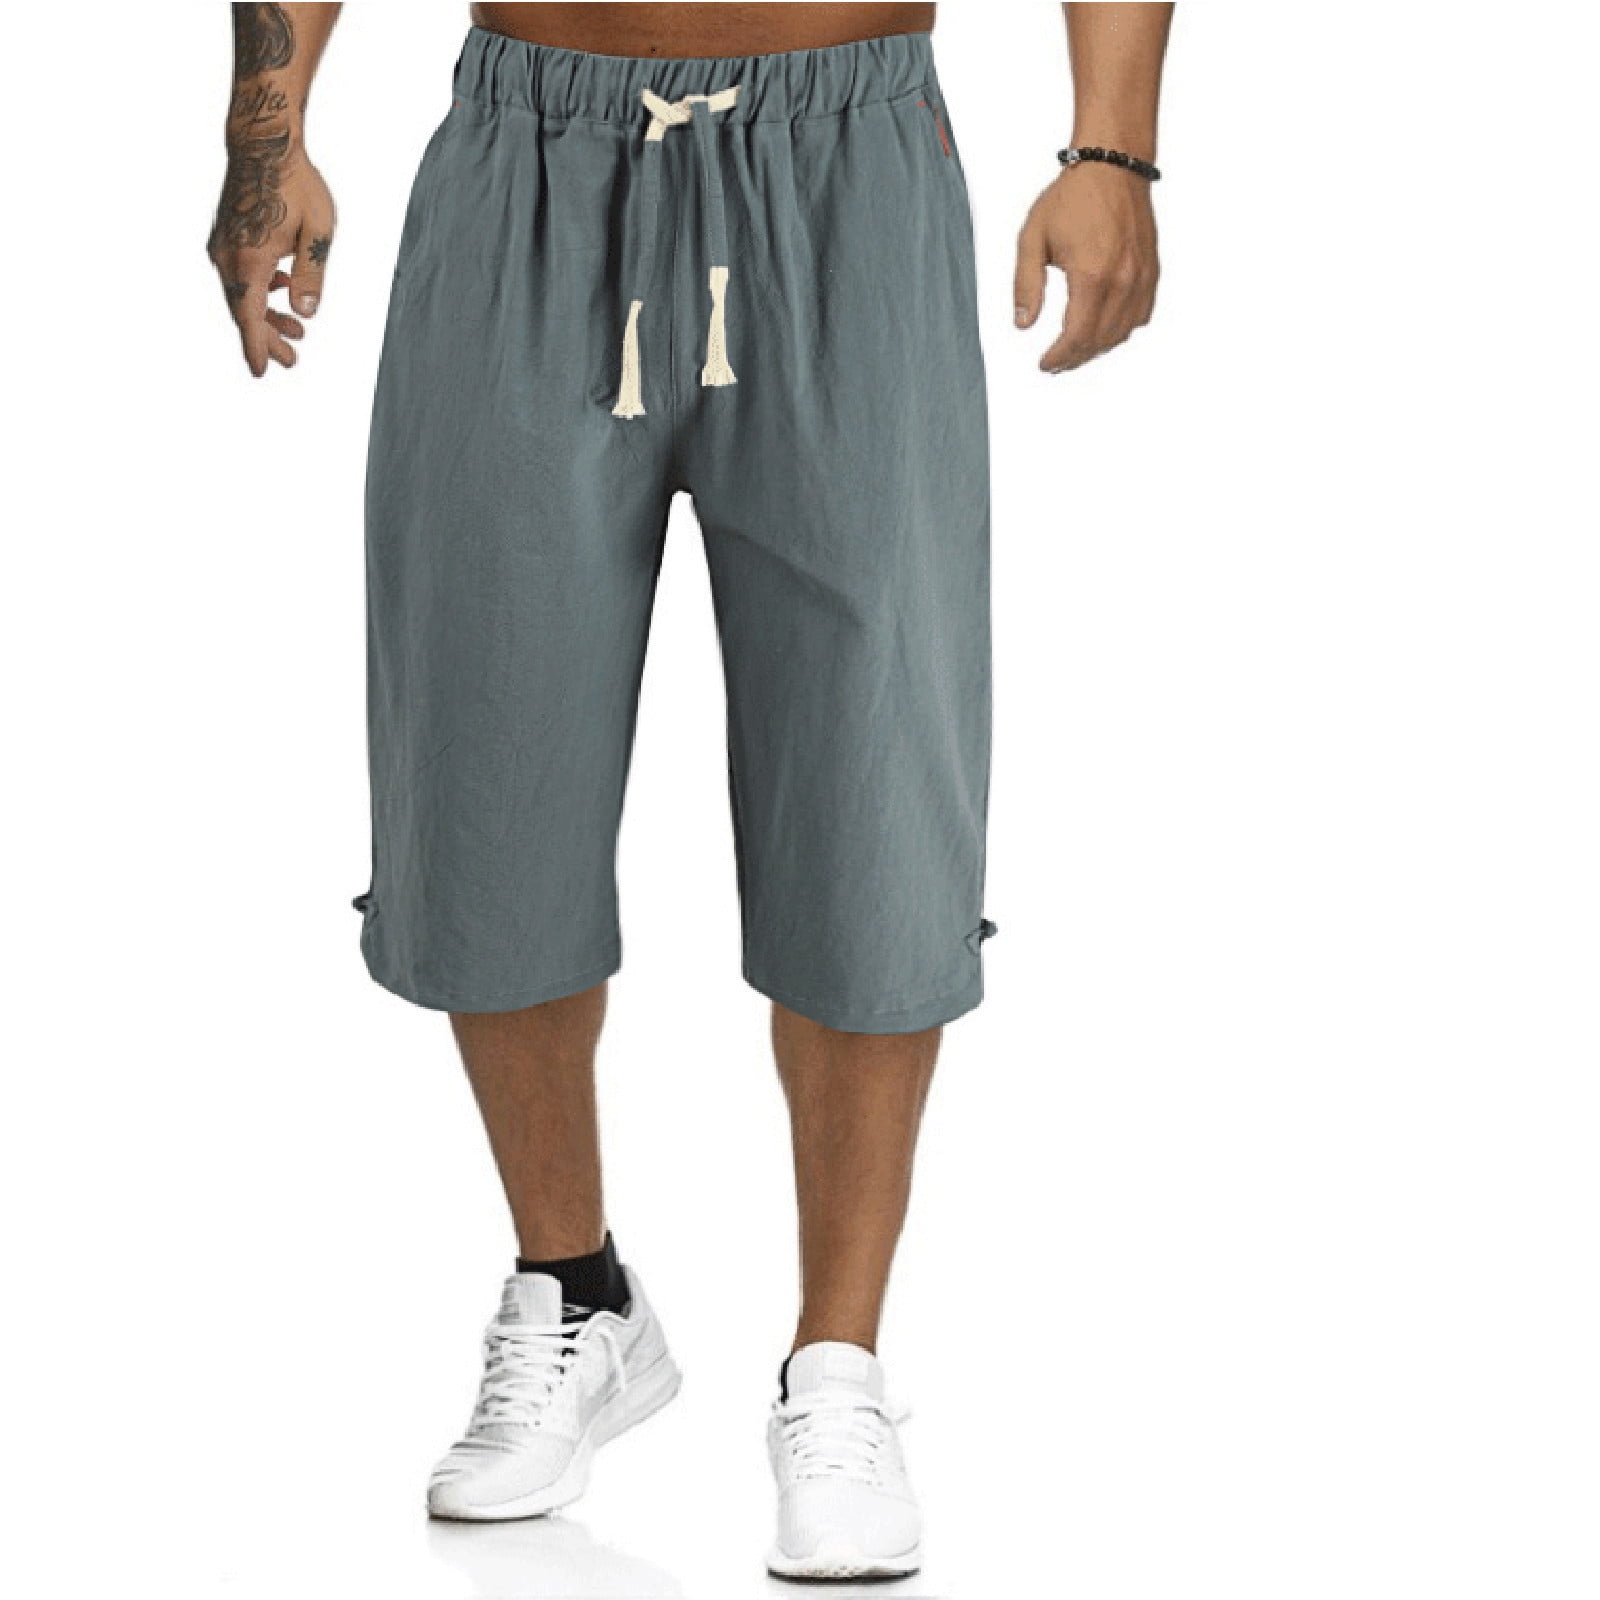 LEEy-world Sweatpants for Men Men's Jogger Drop Crotch Pants Sweatpants ...